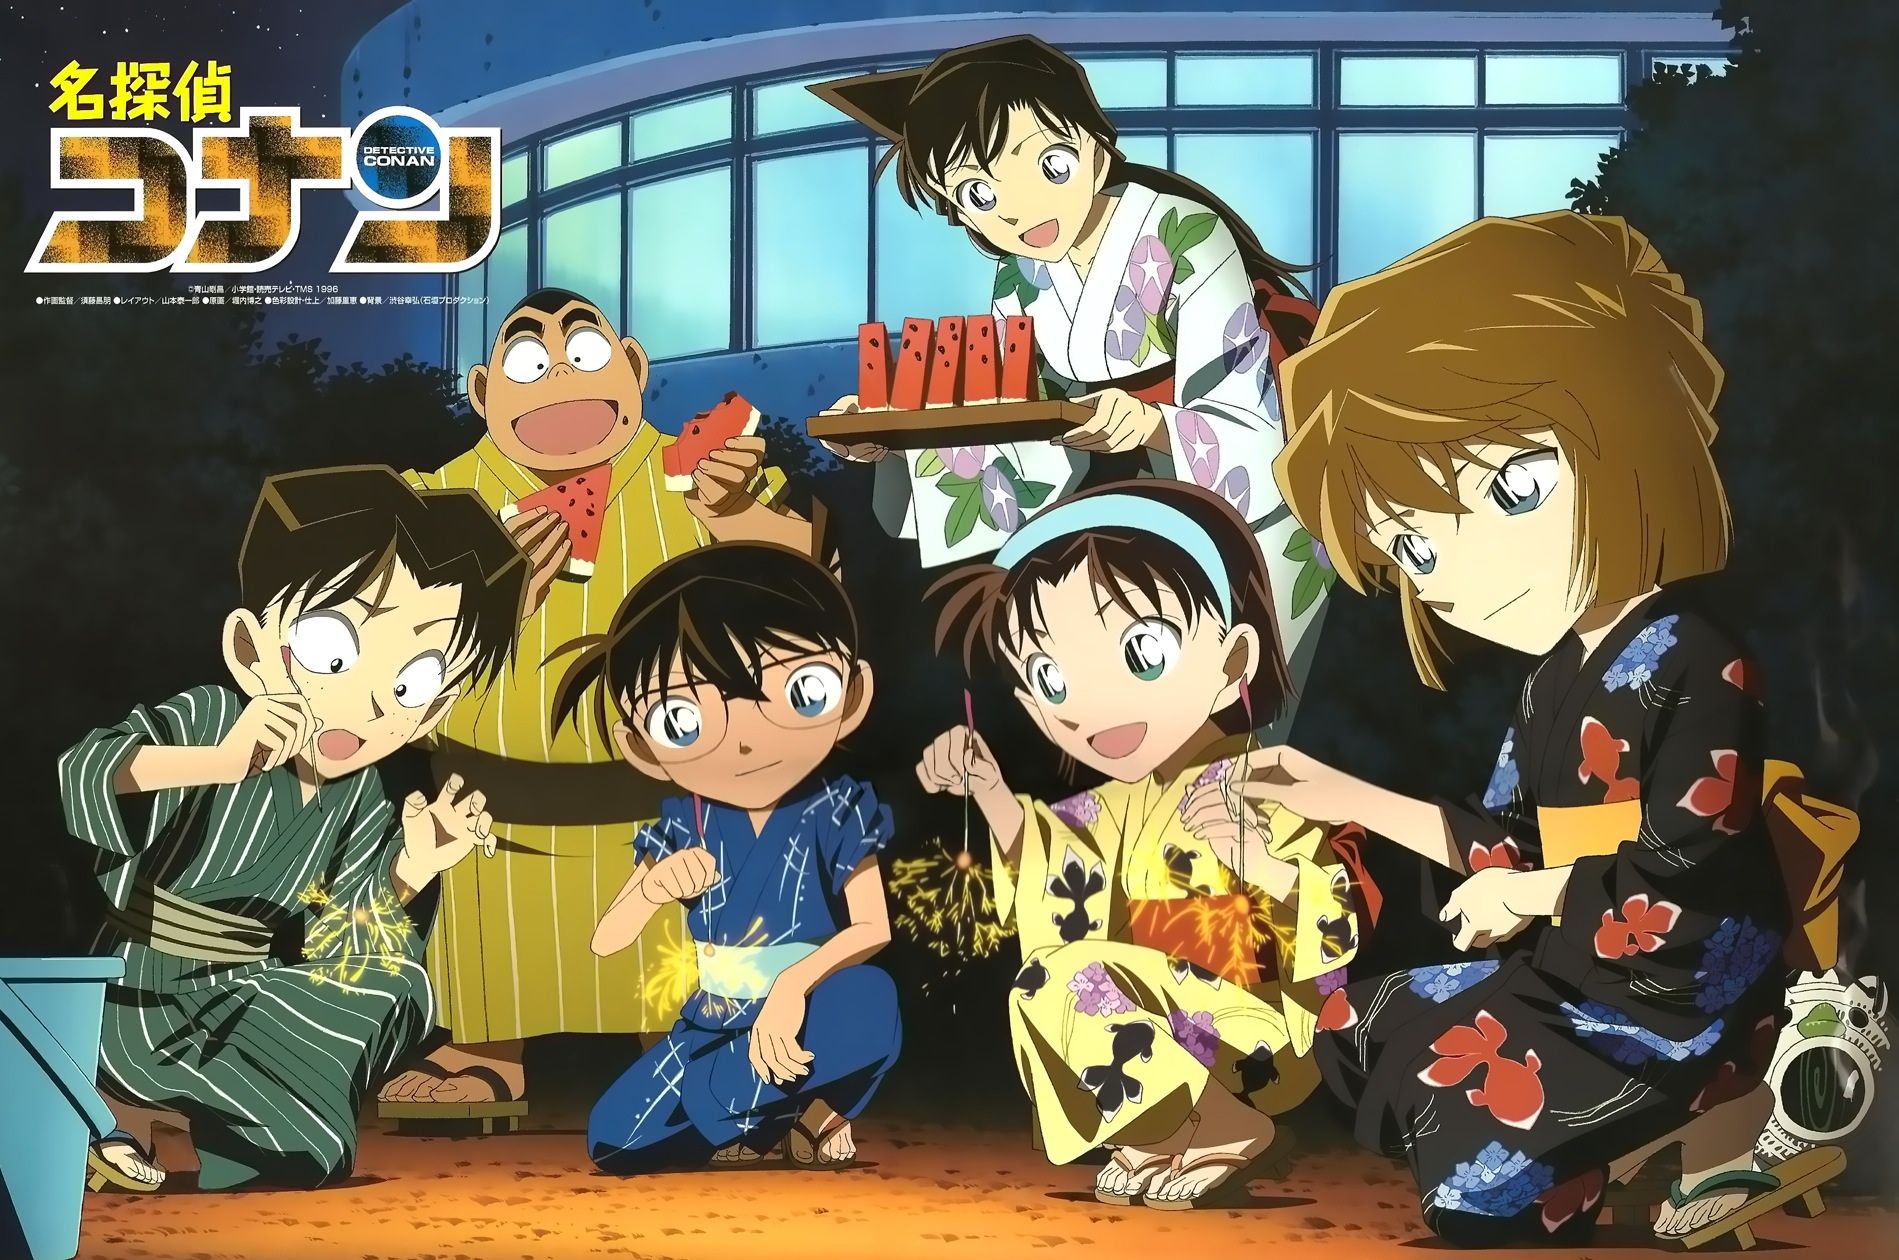 Poster 8 tấm A4 Detective Conan Thám Tử Lừng Danh anime tranh treo album ảnh in hình đẹp (MẪU GIAO NGẪU NHIÊN)